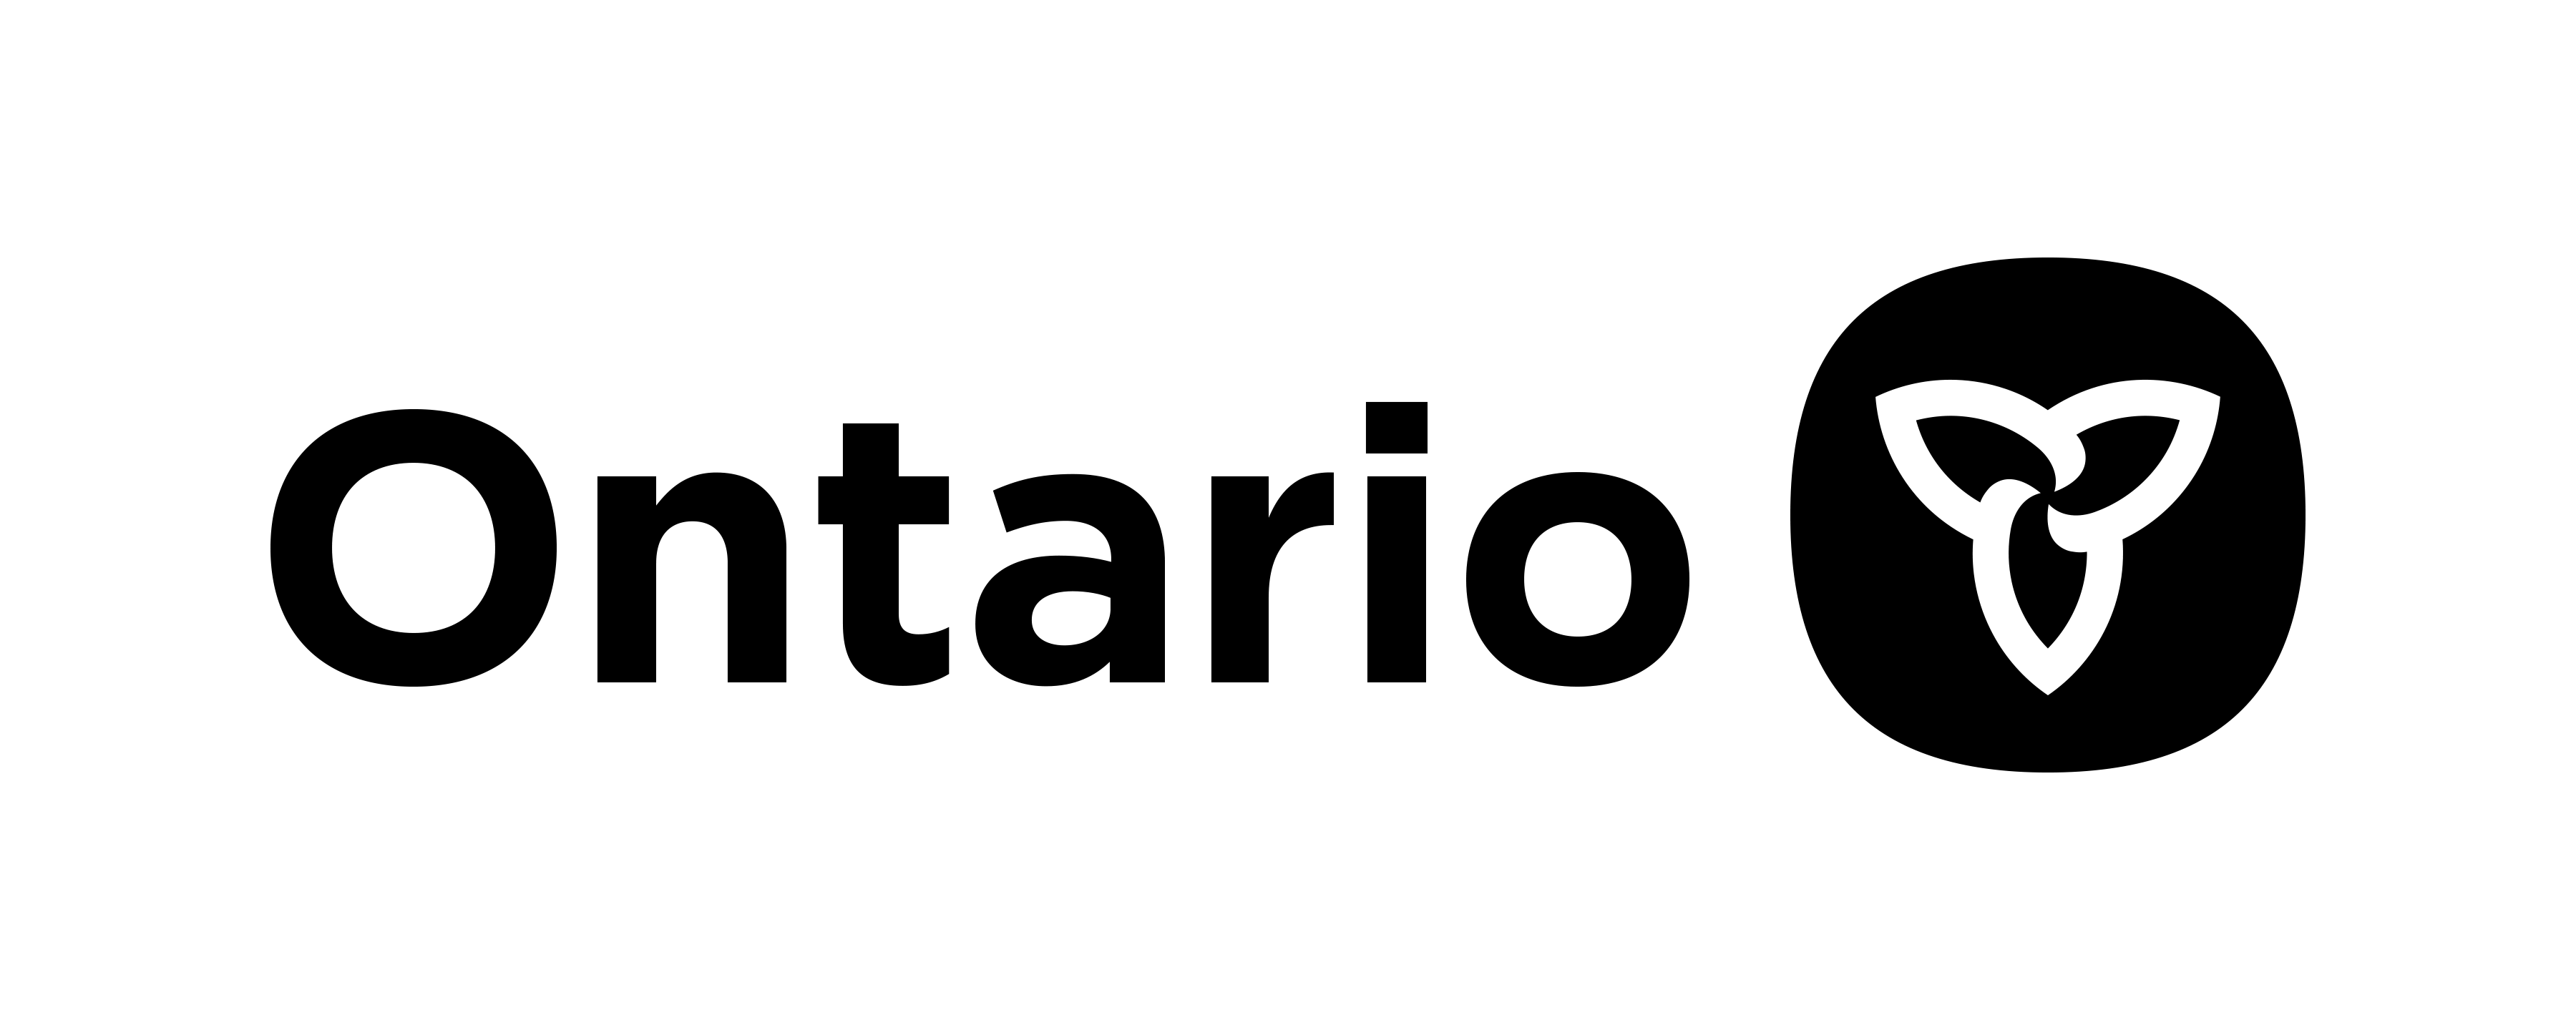 Ontatio Province Logo